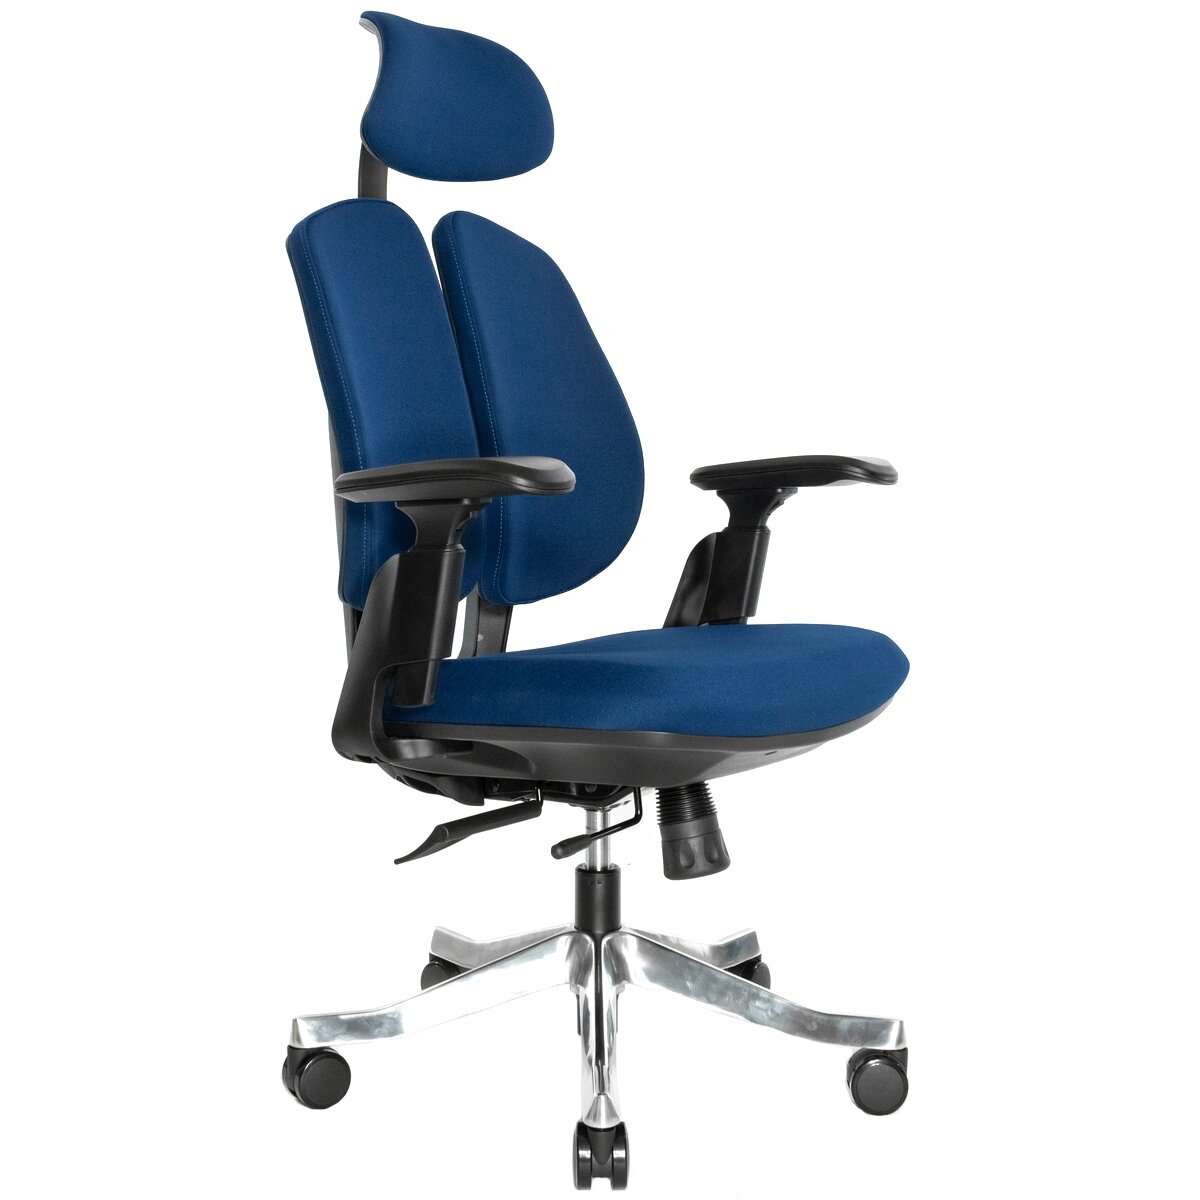 FALTO ортопедическое офисное кресло Orto Bionic А-92-2 Fabric (синее, каркас черный)